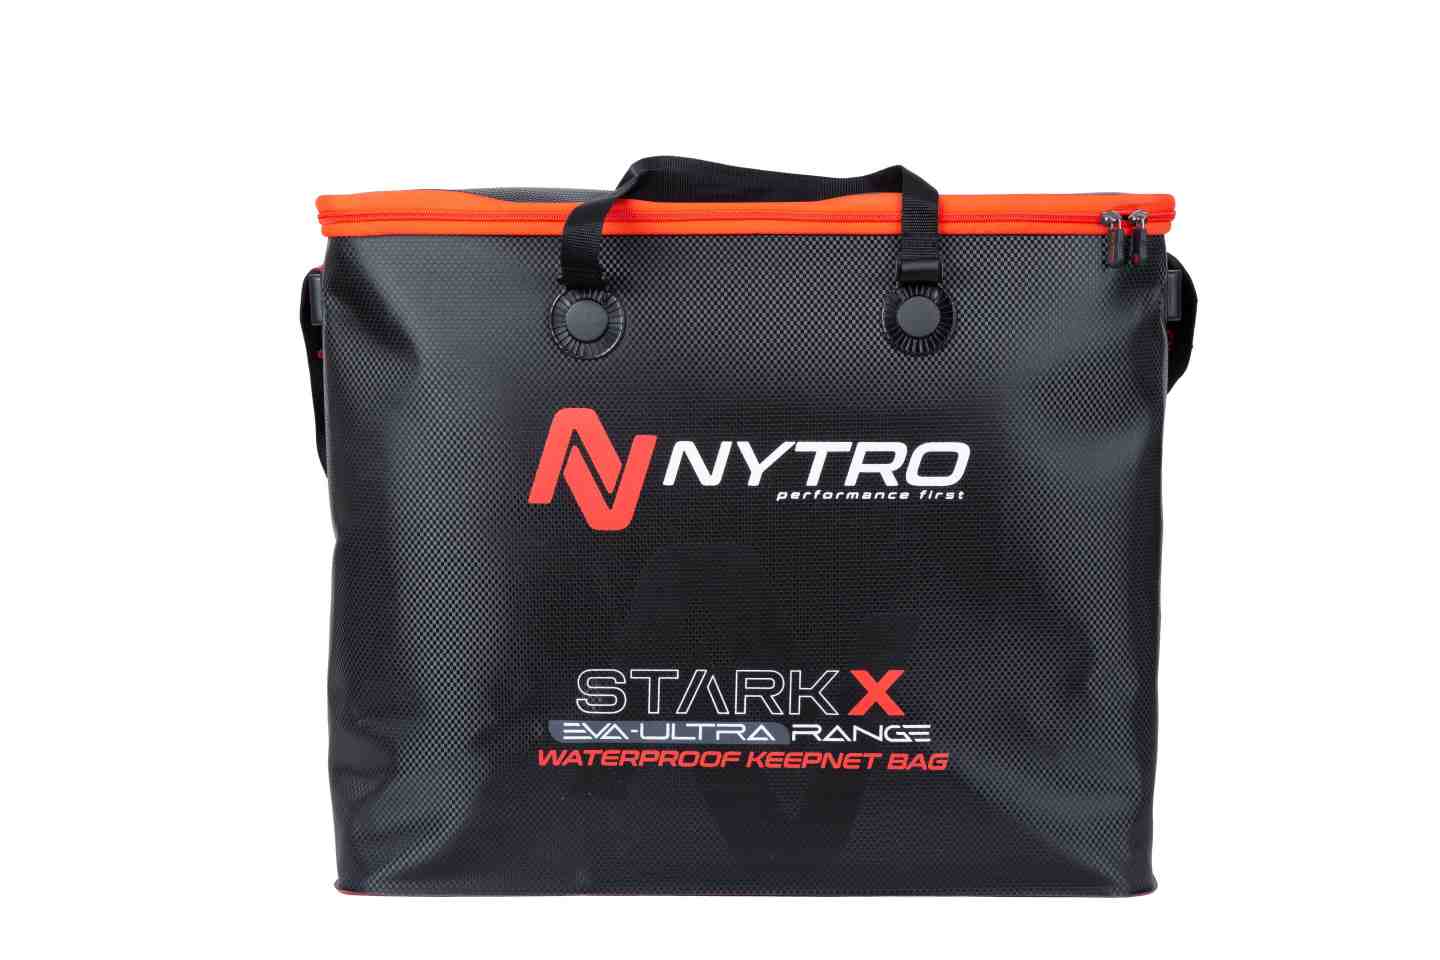 Nytro StarkX EVA Borsa Impermeabile per Nasse XL